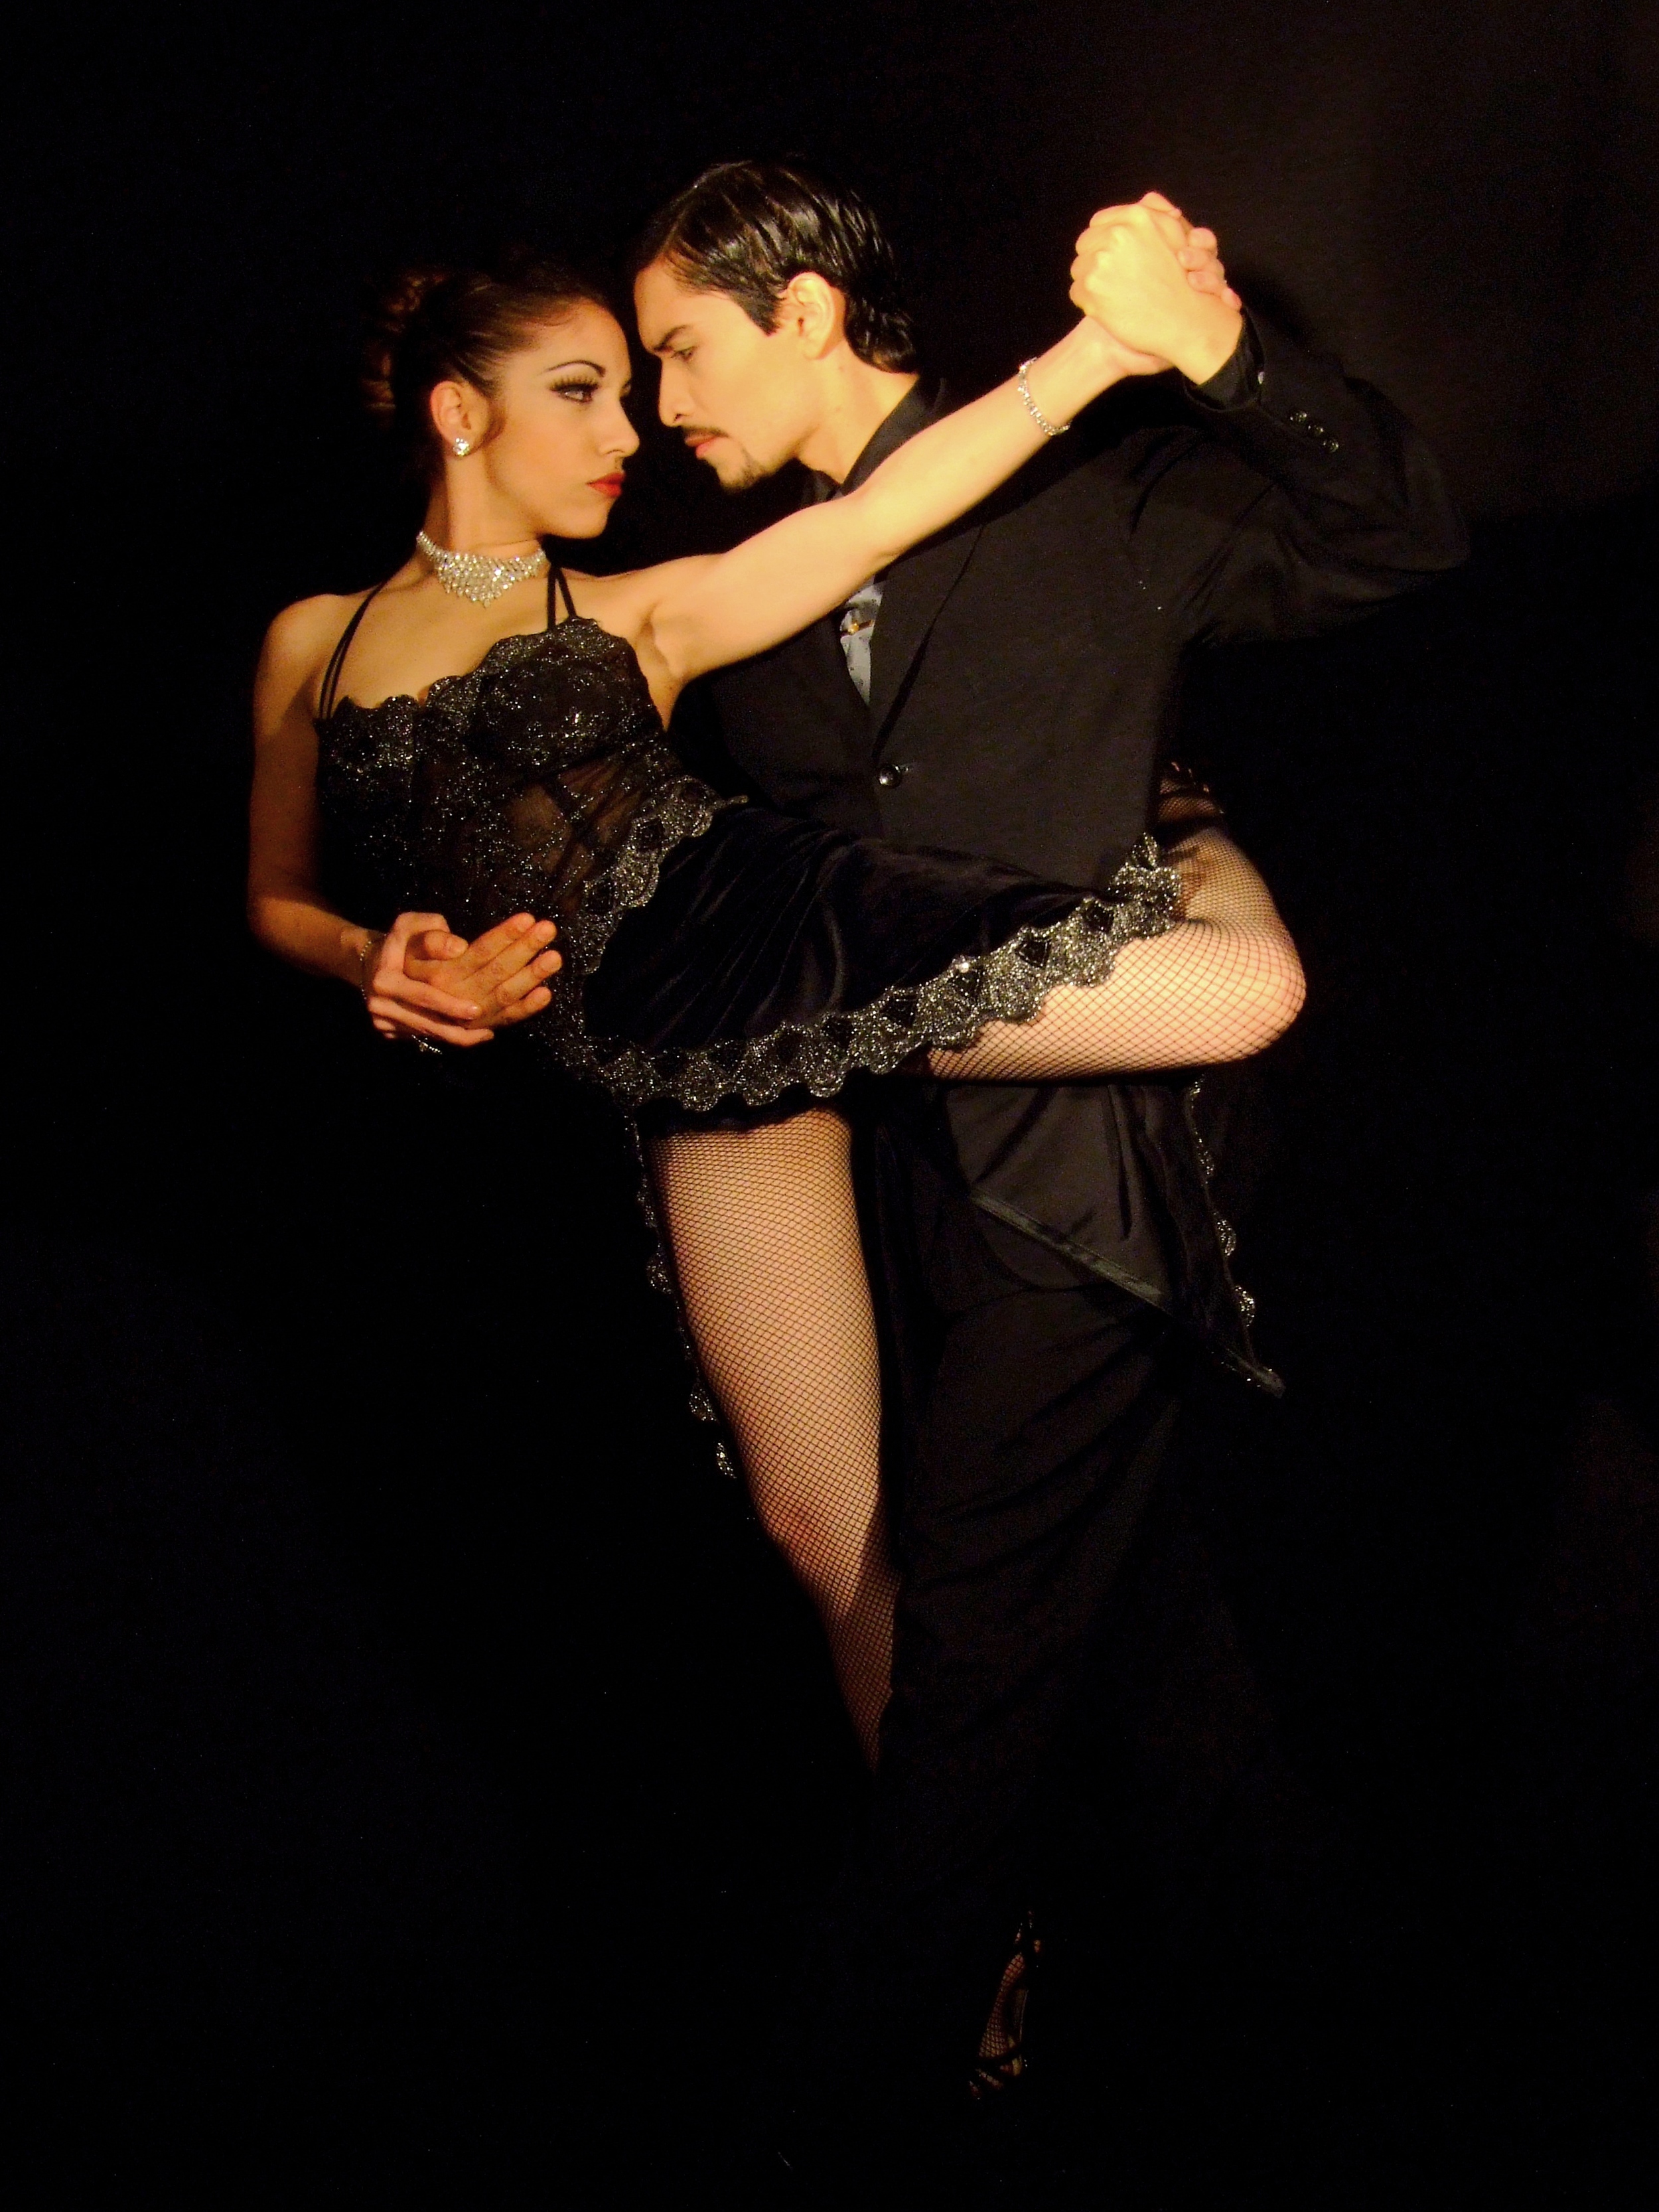 Et quoi vous aussi vous avez l application tango | mori-shiba.fr